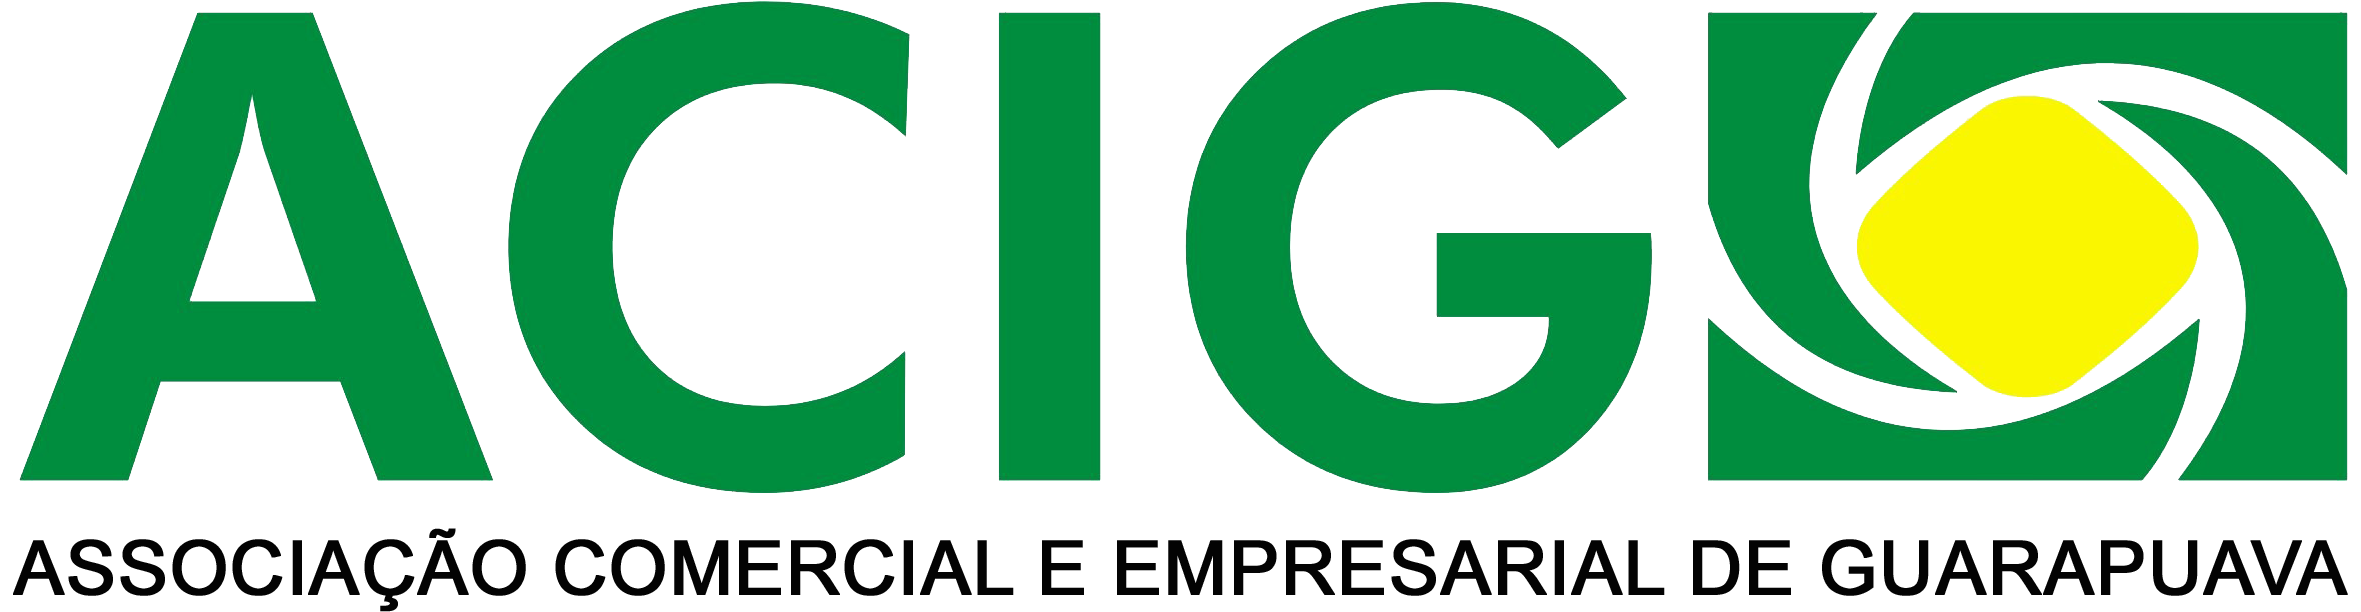 Acig - Associação Comercial e Empresarial de Guarapuava